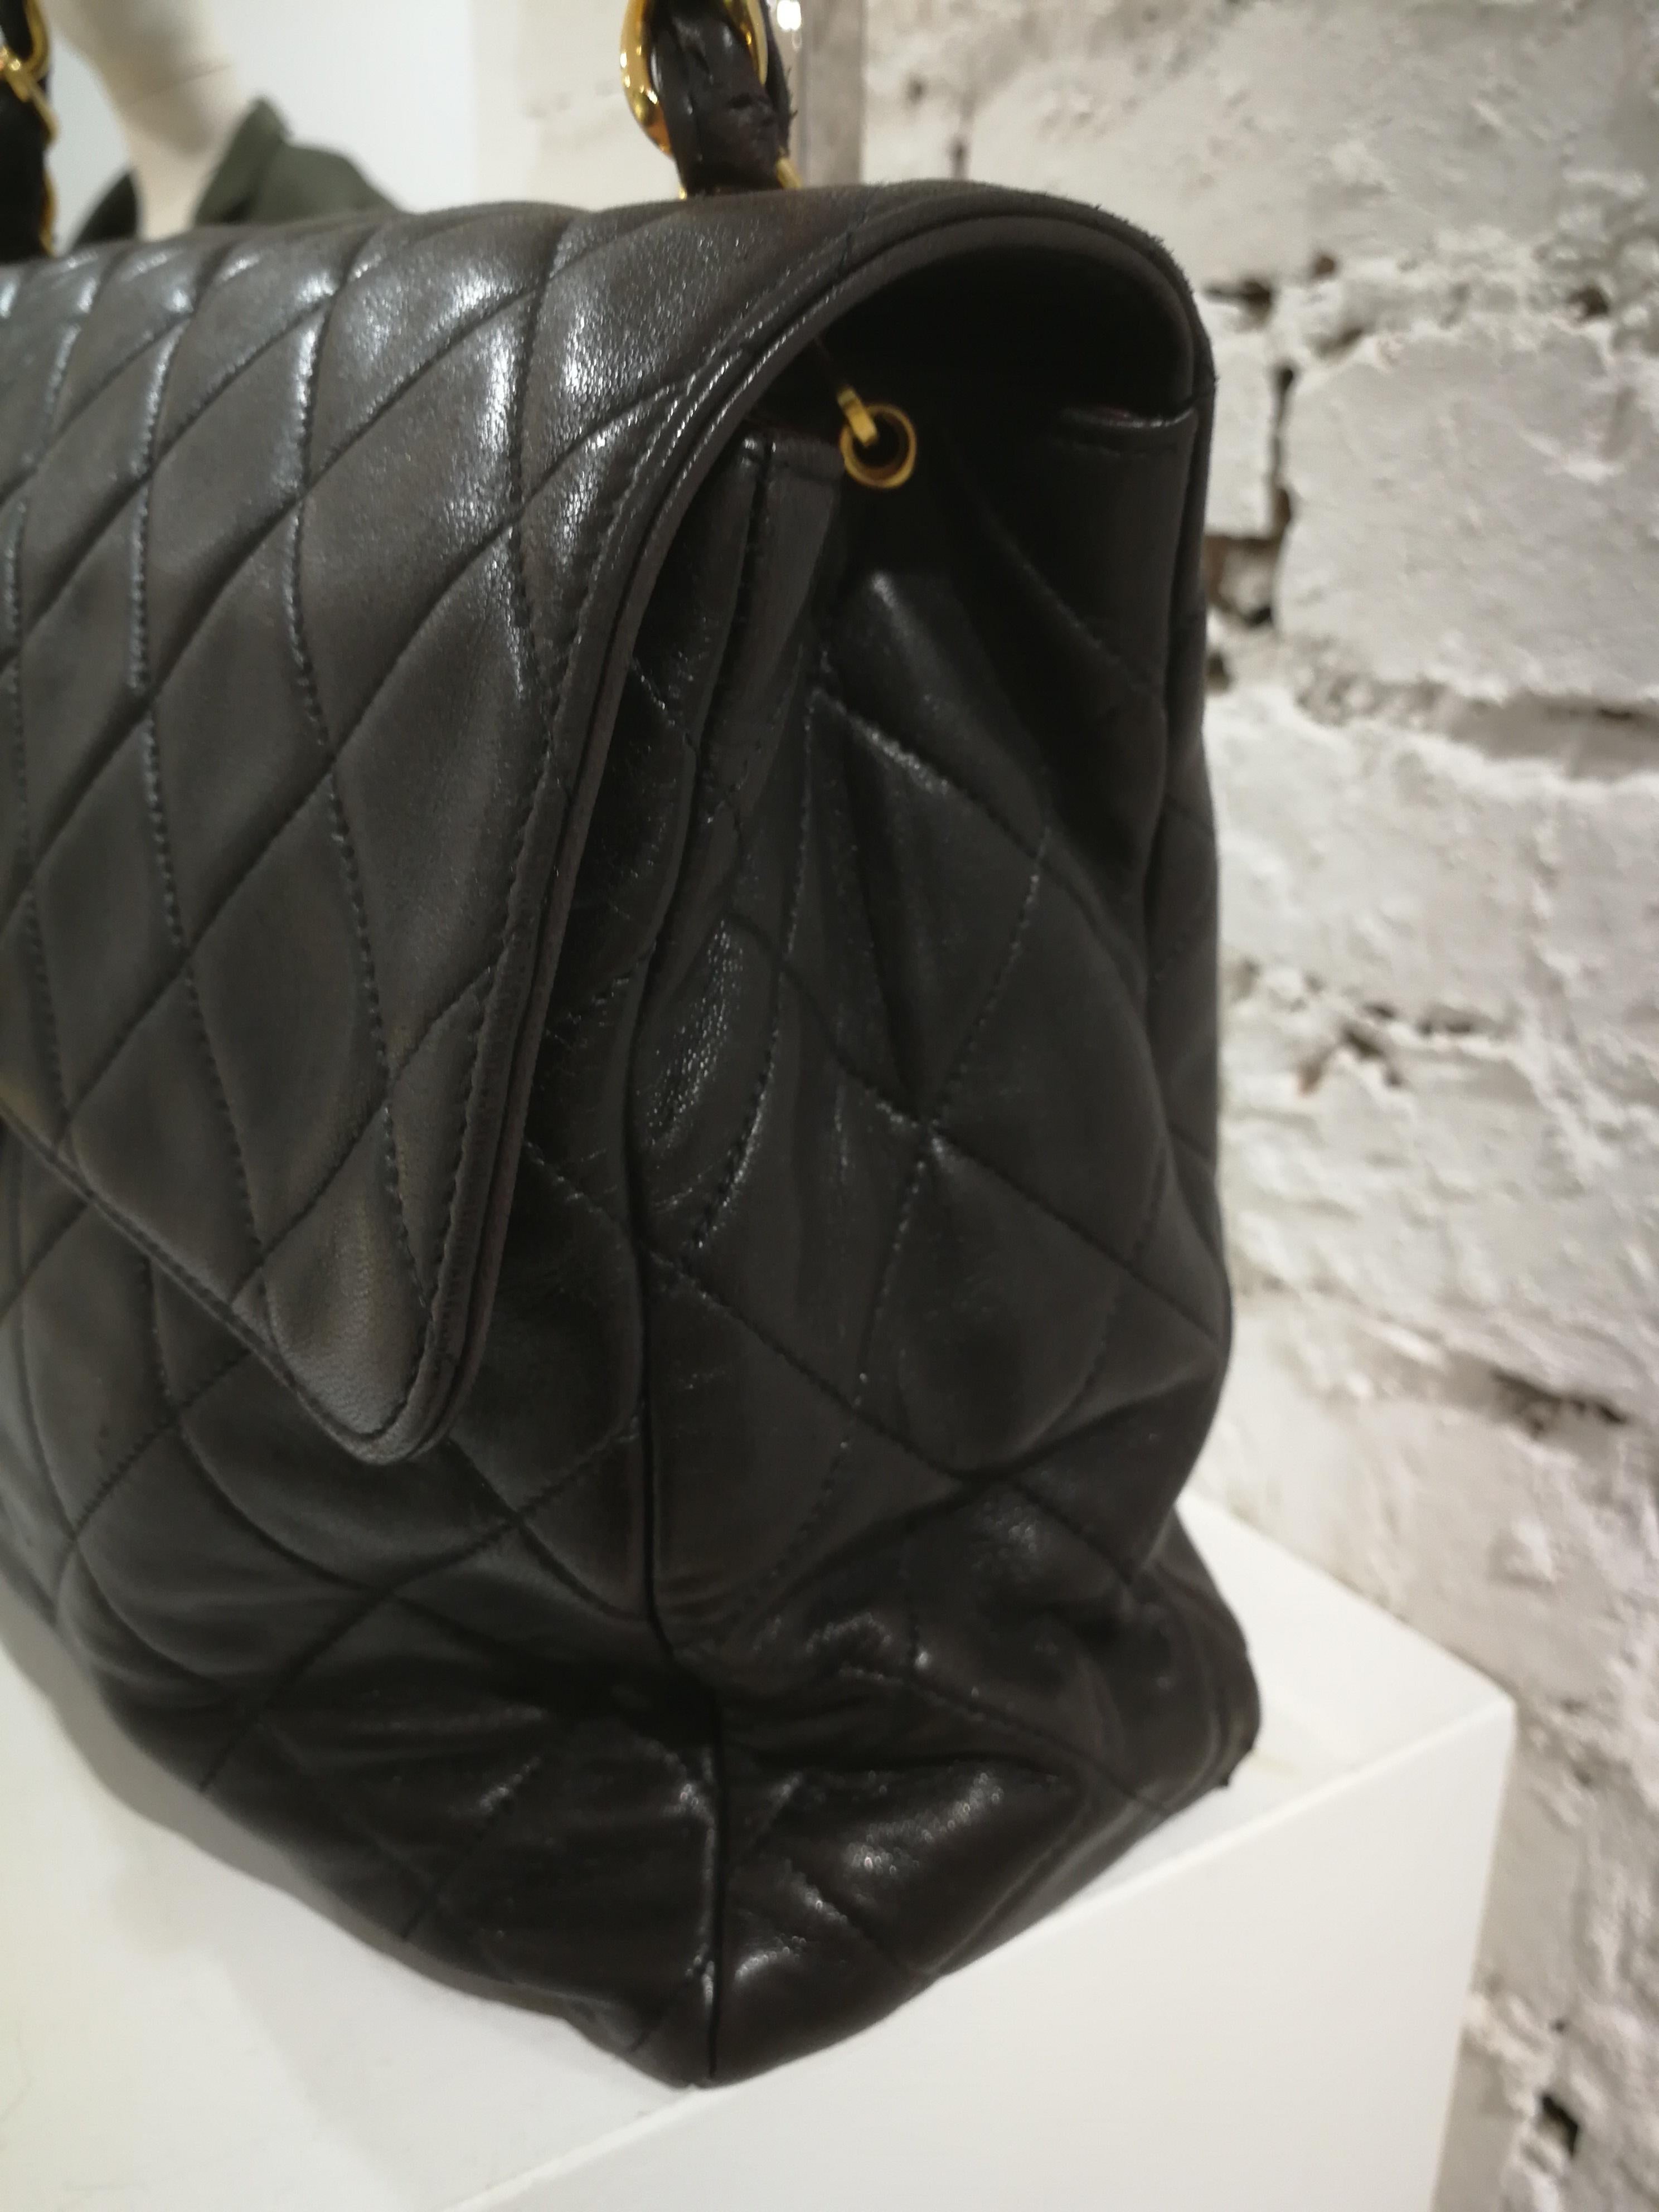 1990s Chanel Black Leather Jumbo Shoulder Bag
Soft lamb skin leather, bordeaux tone inside 
outside pocket
inside pocket
gold tone hardware
